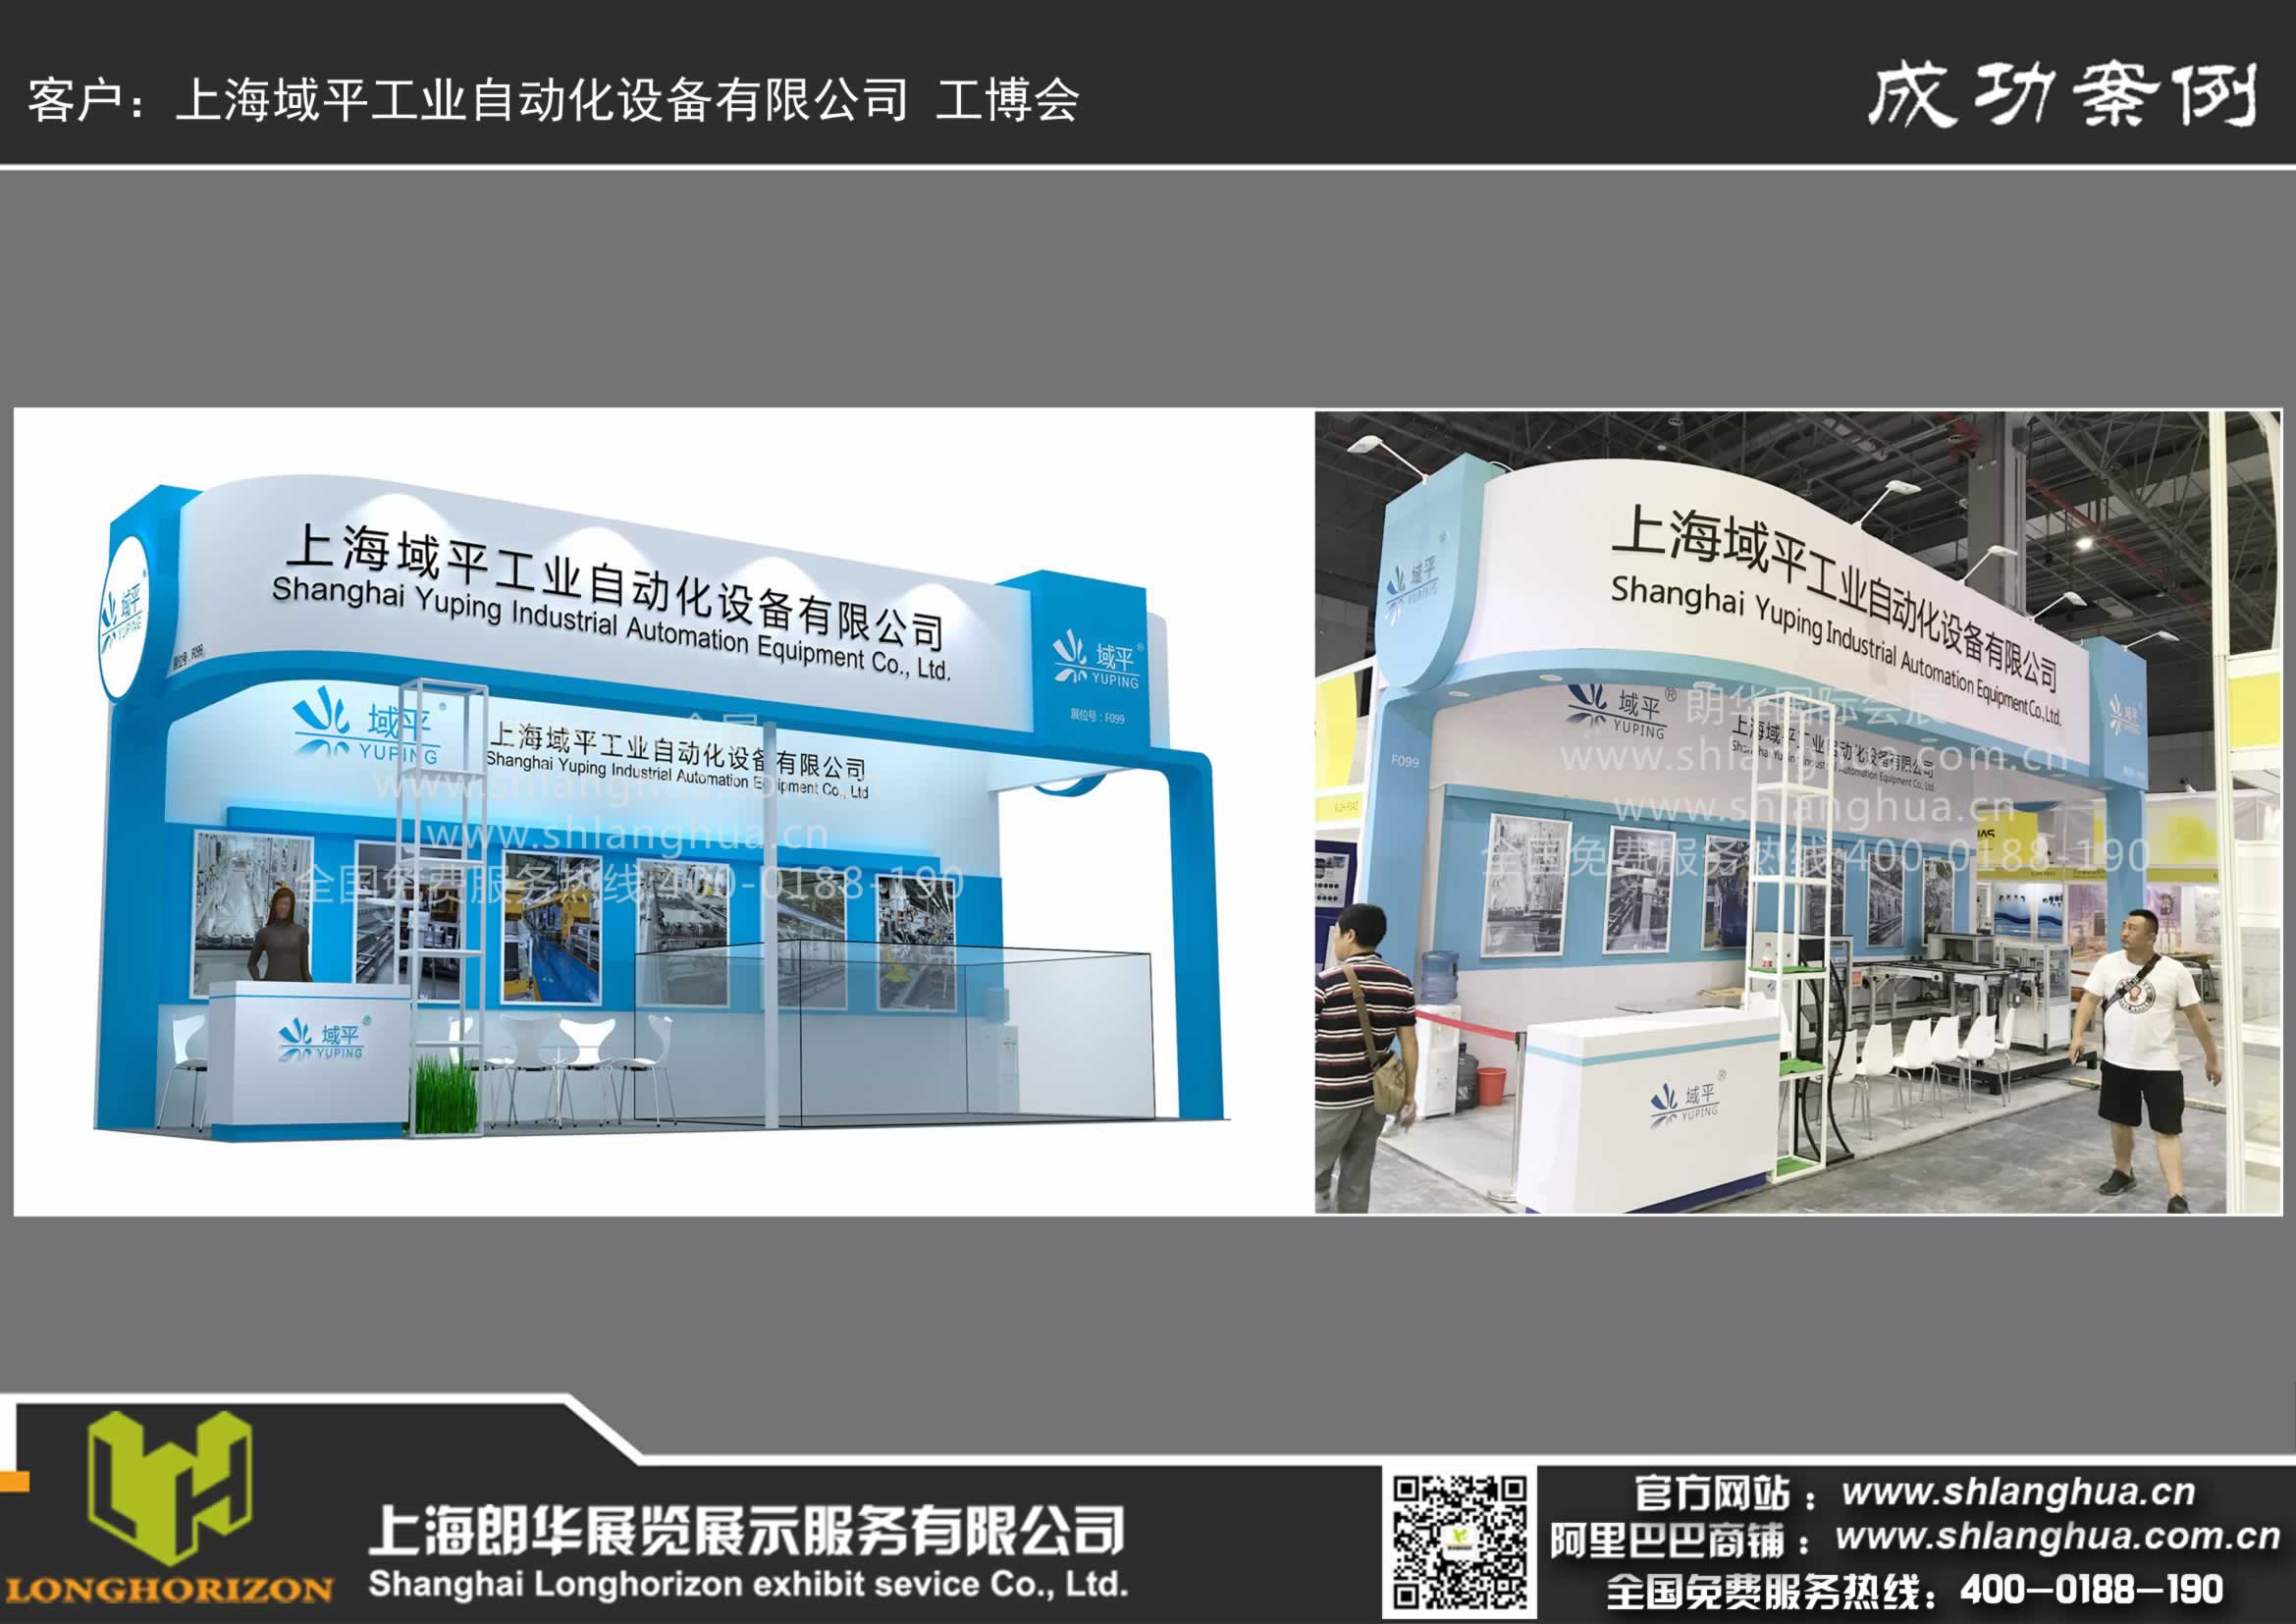 上海域平工业自动化设备有限公司 工博会